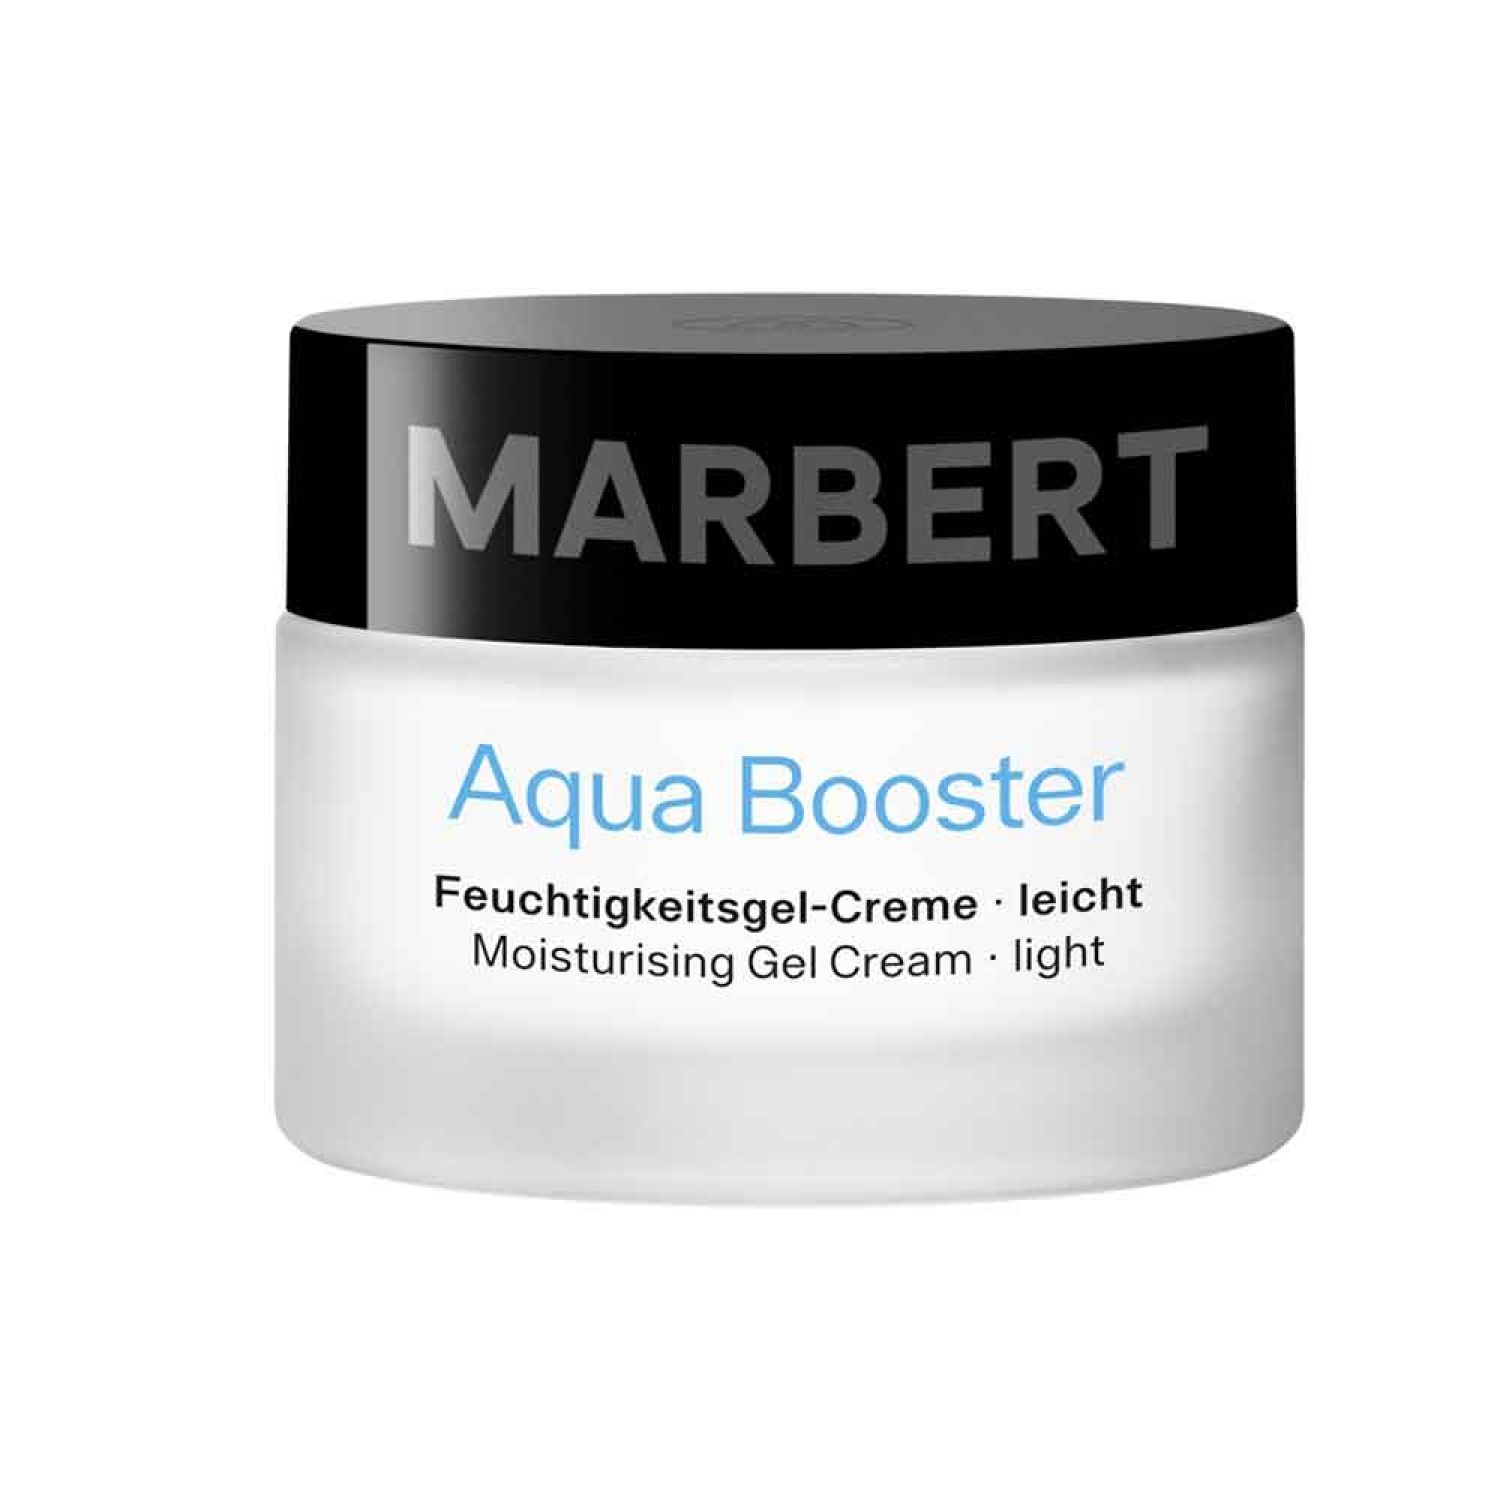 Marbert Moisturizing Care Aqua Booster Feuchtigkeitsgel-Creme - leicht